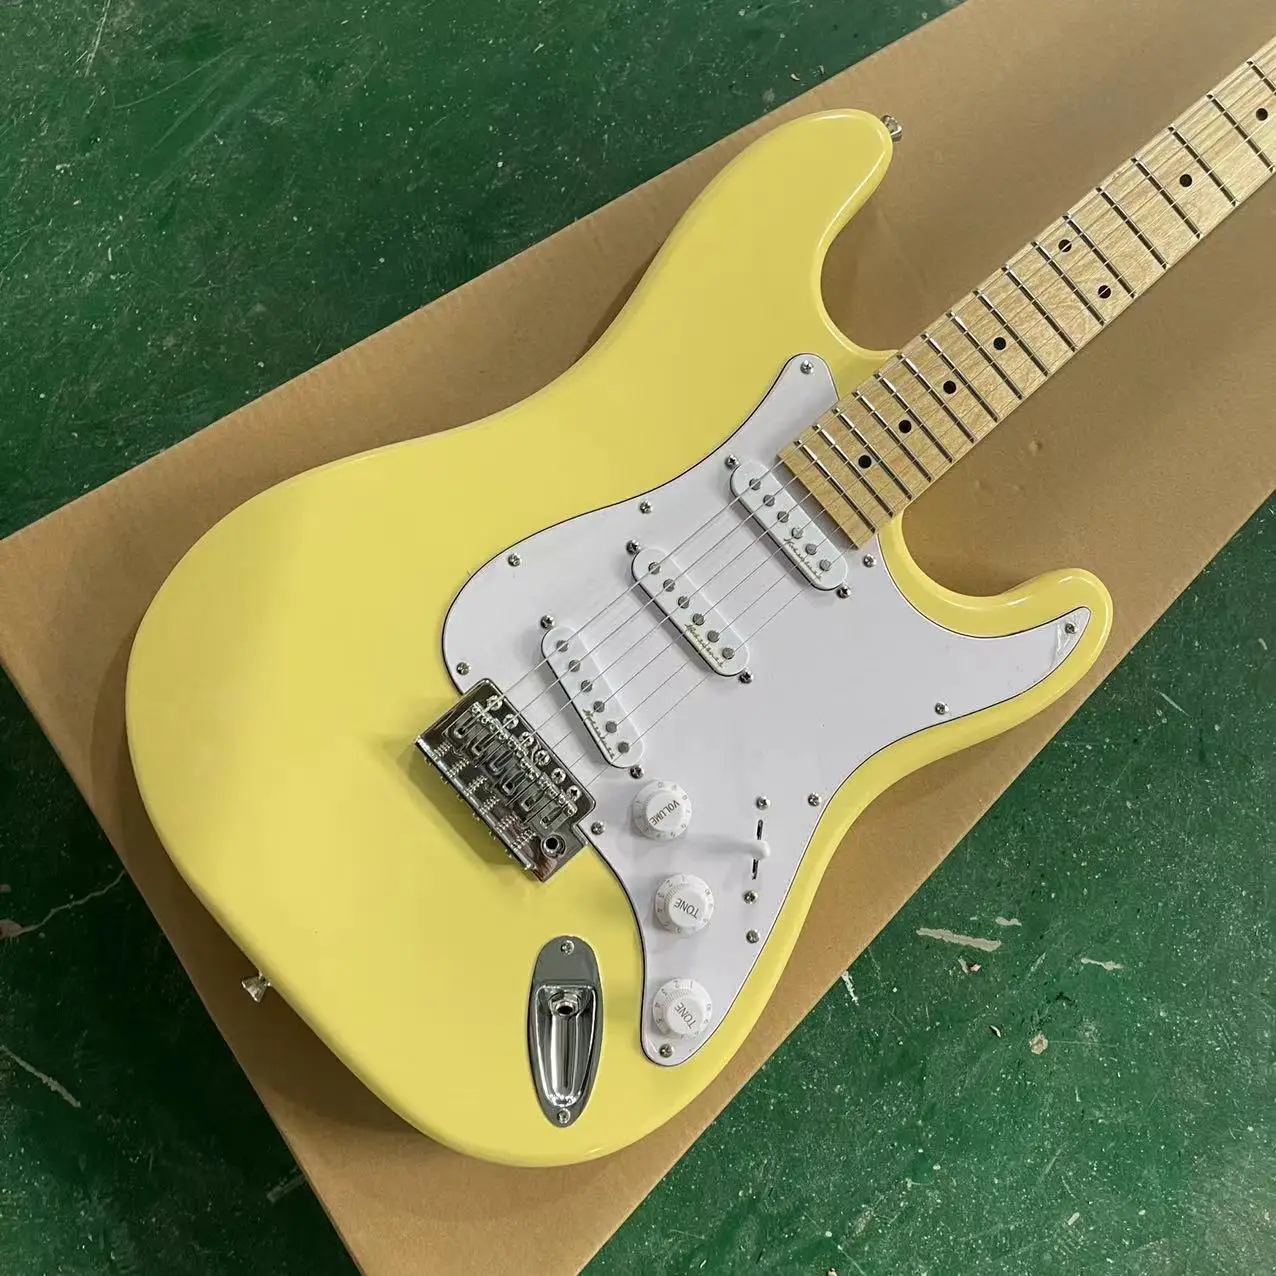 ST divisão de guitarra elétrica, corpo amarelo, único único cartucho, branco guarda conselho, único roqueiro acorde conselho, maple escala Imagem 0